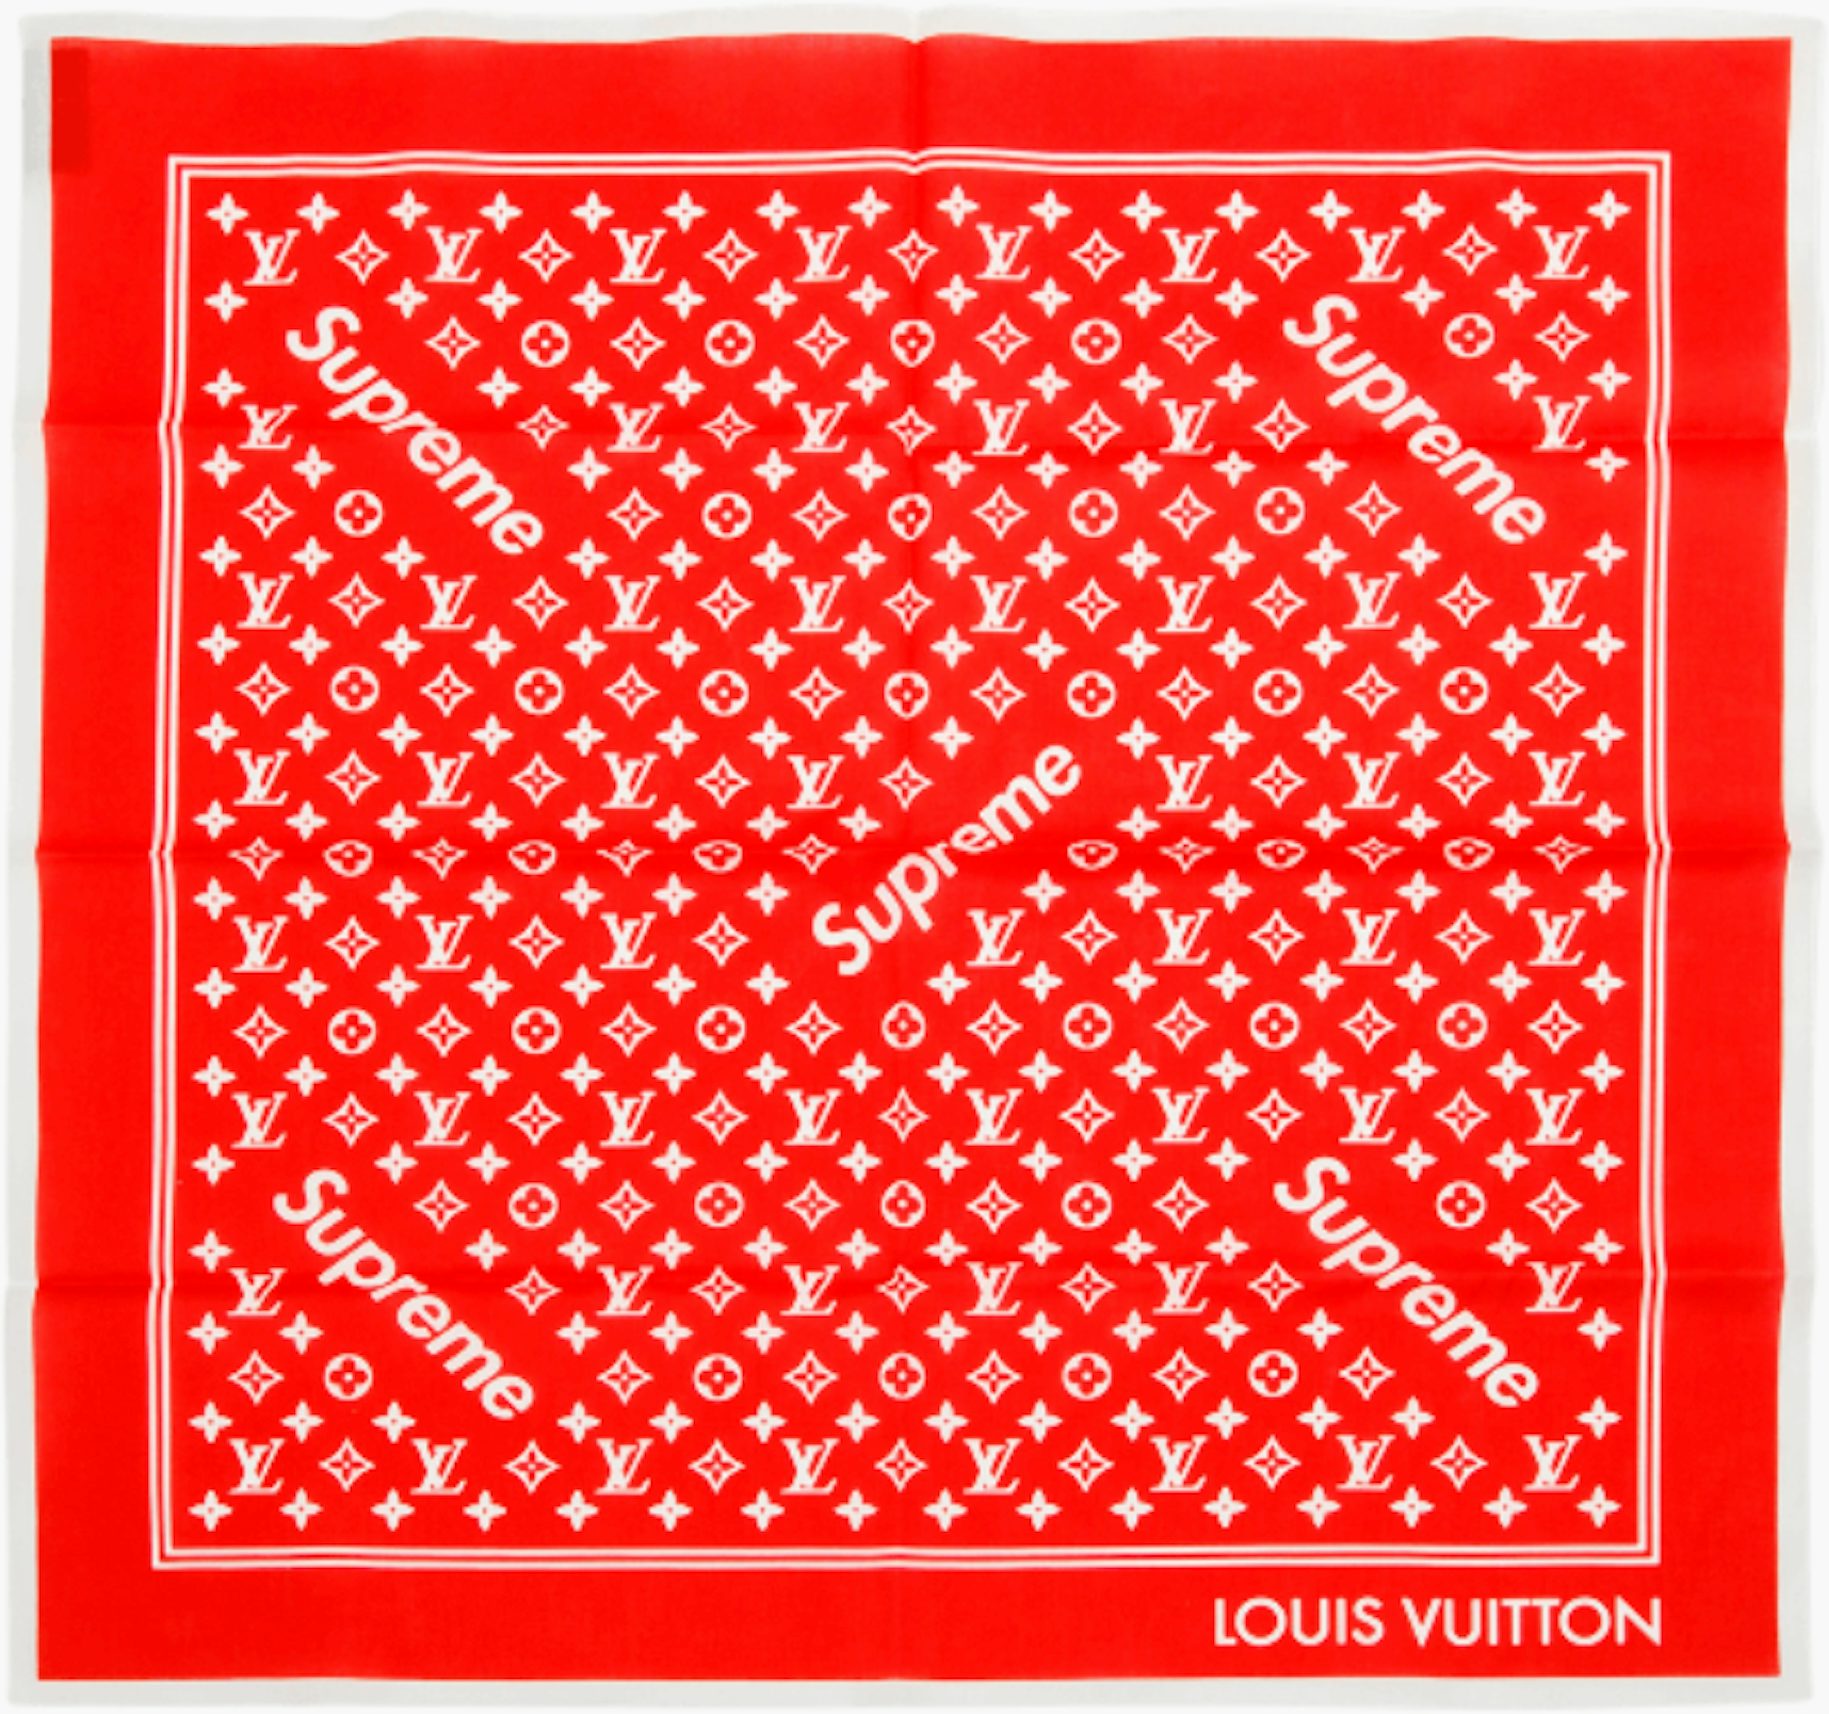 Louis Vuitton Monogram Bandana Crewneck Indigo/White